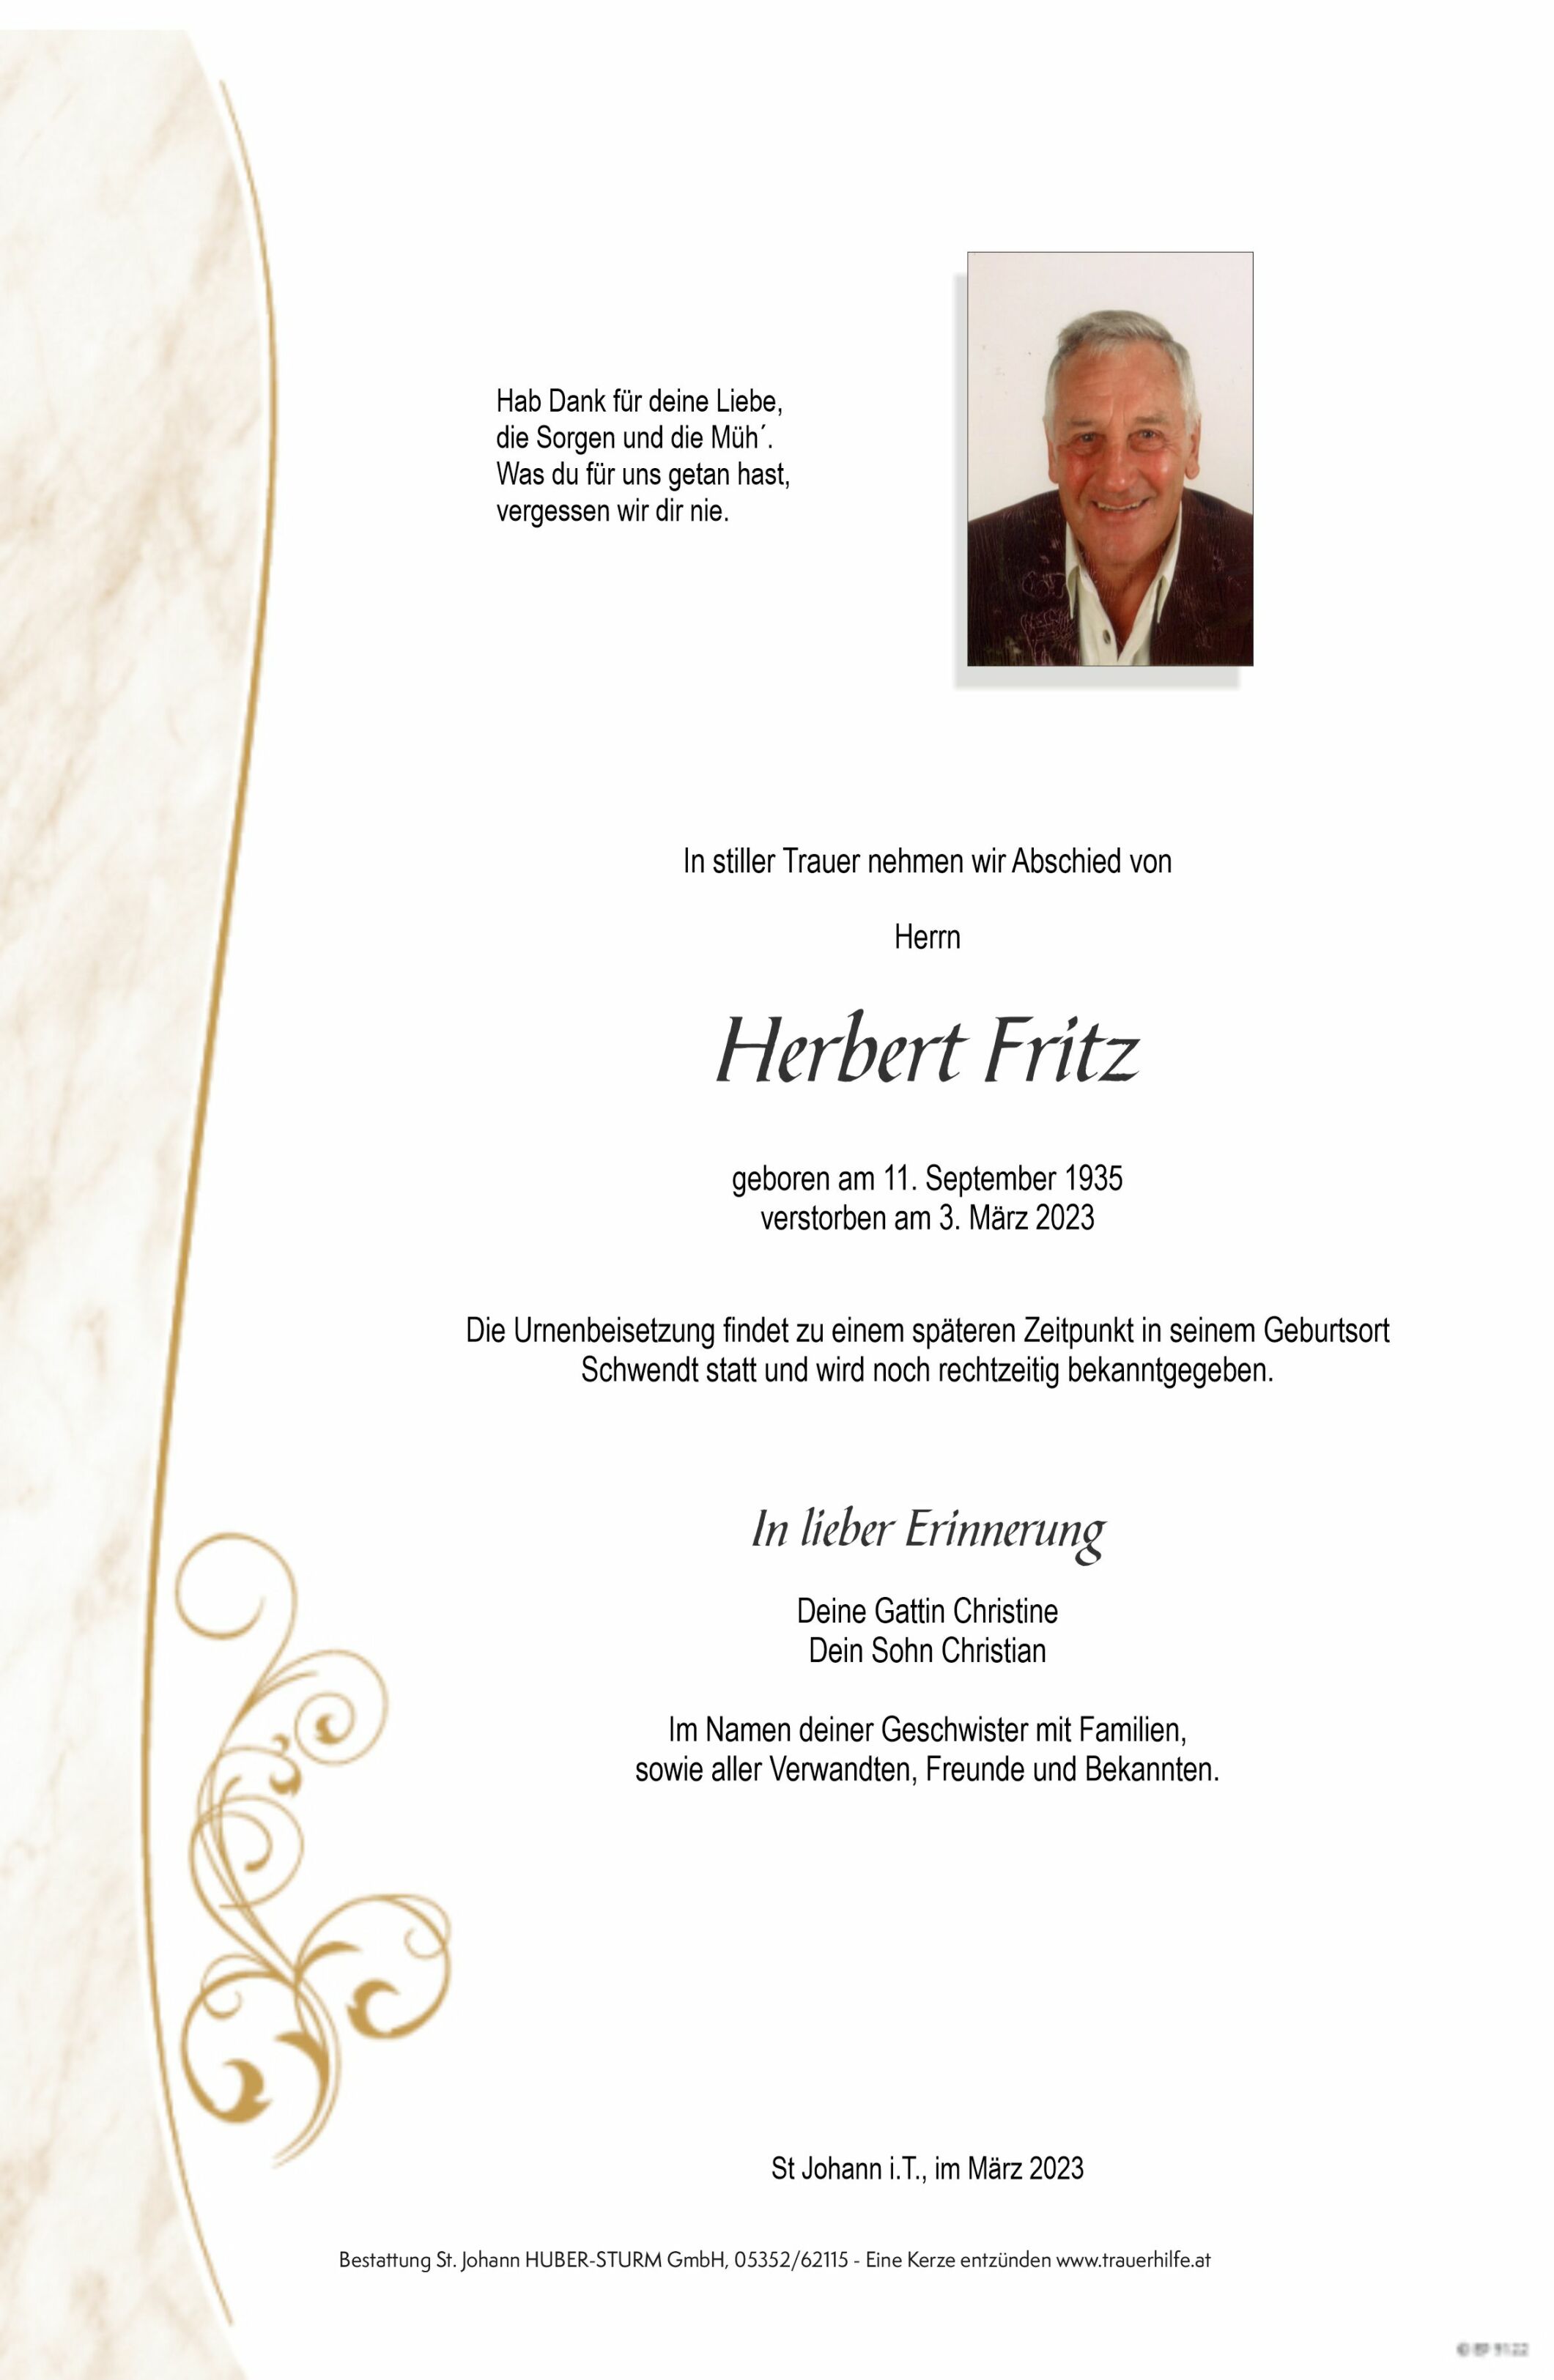 Herbert Fritz